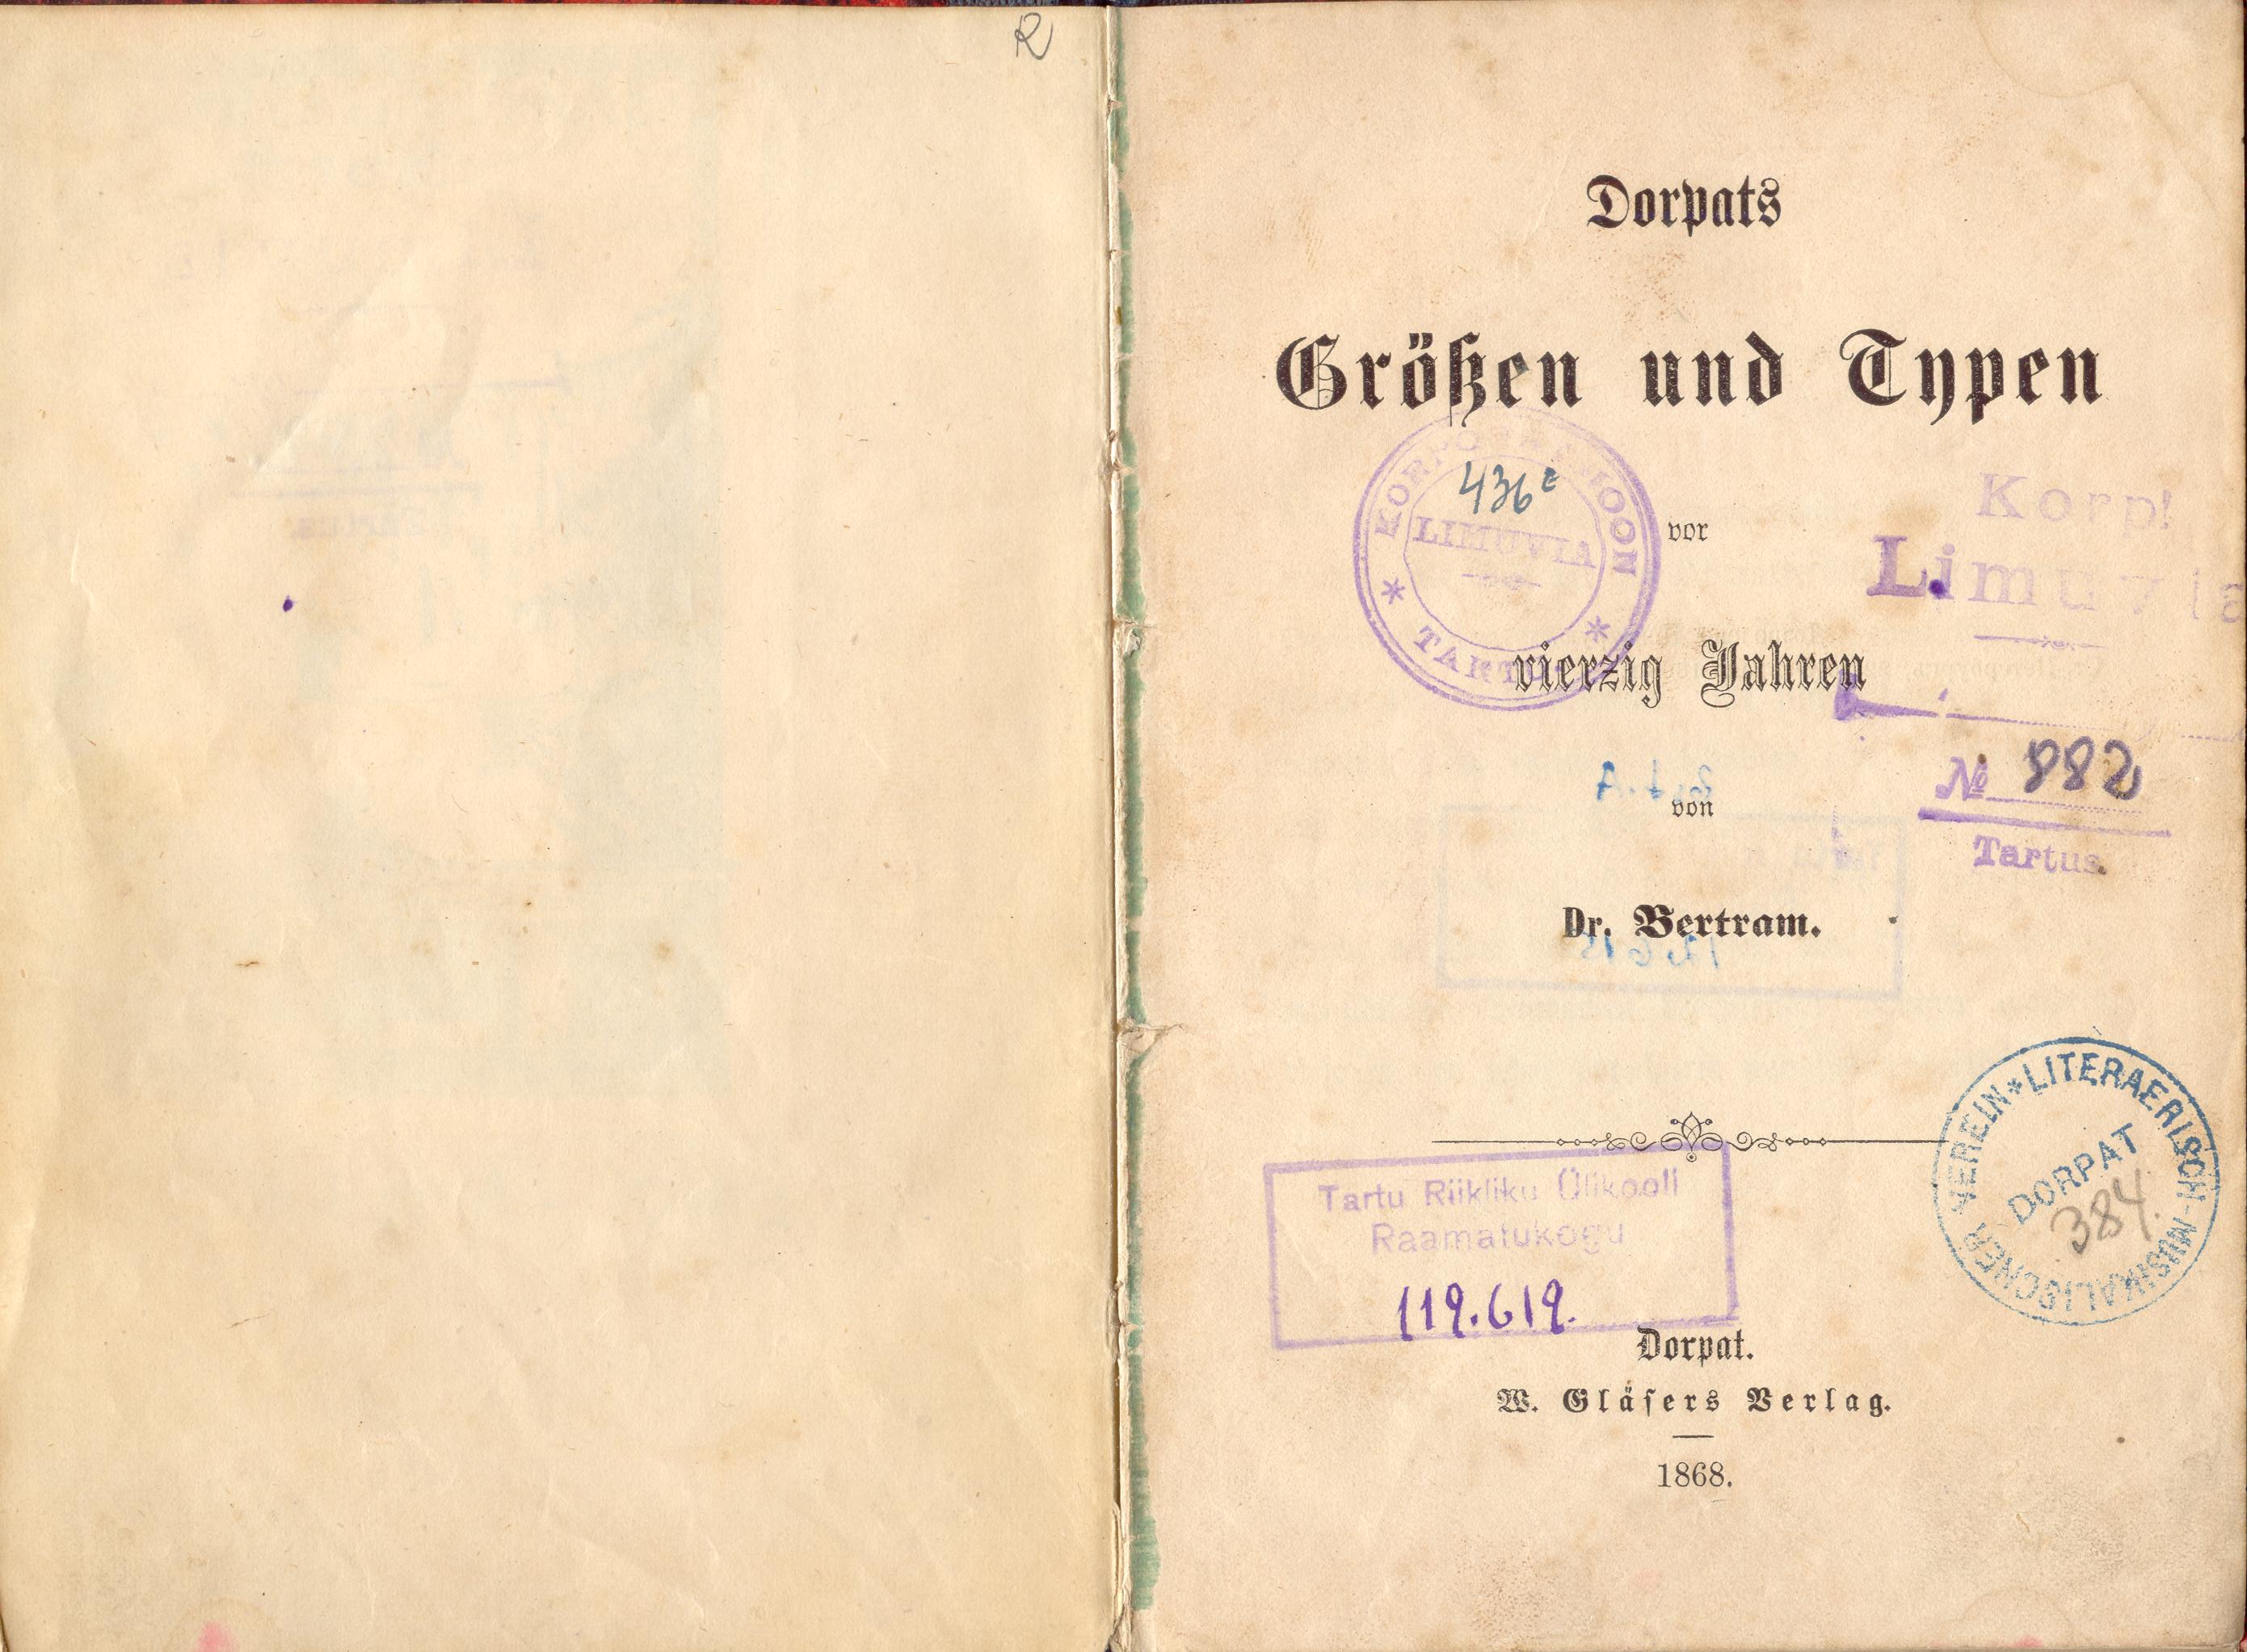 Dorpats Grössen und Typen (1868) | 2. Титульный лист